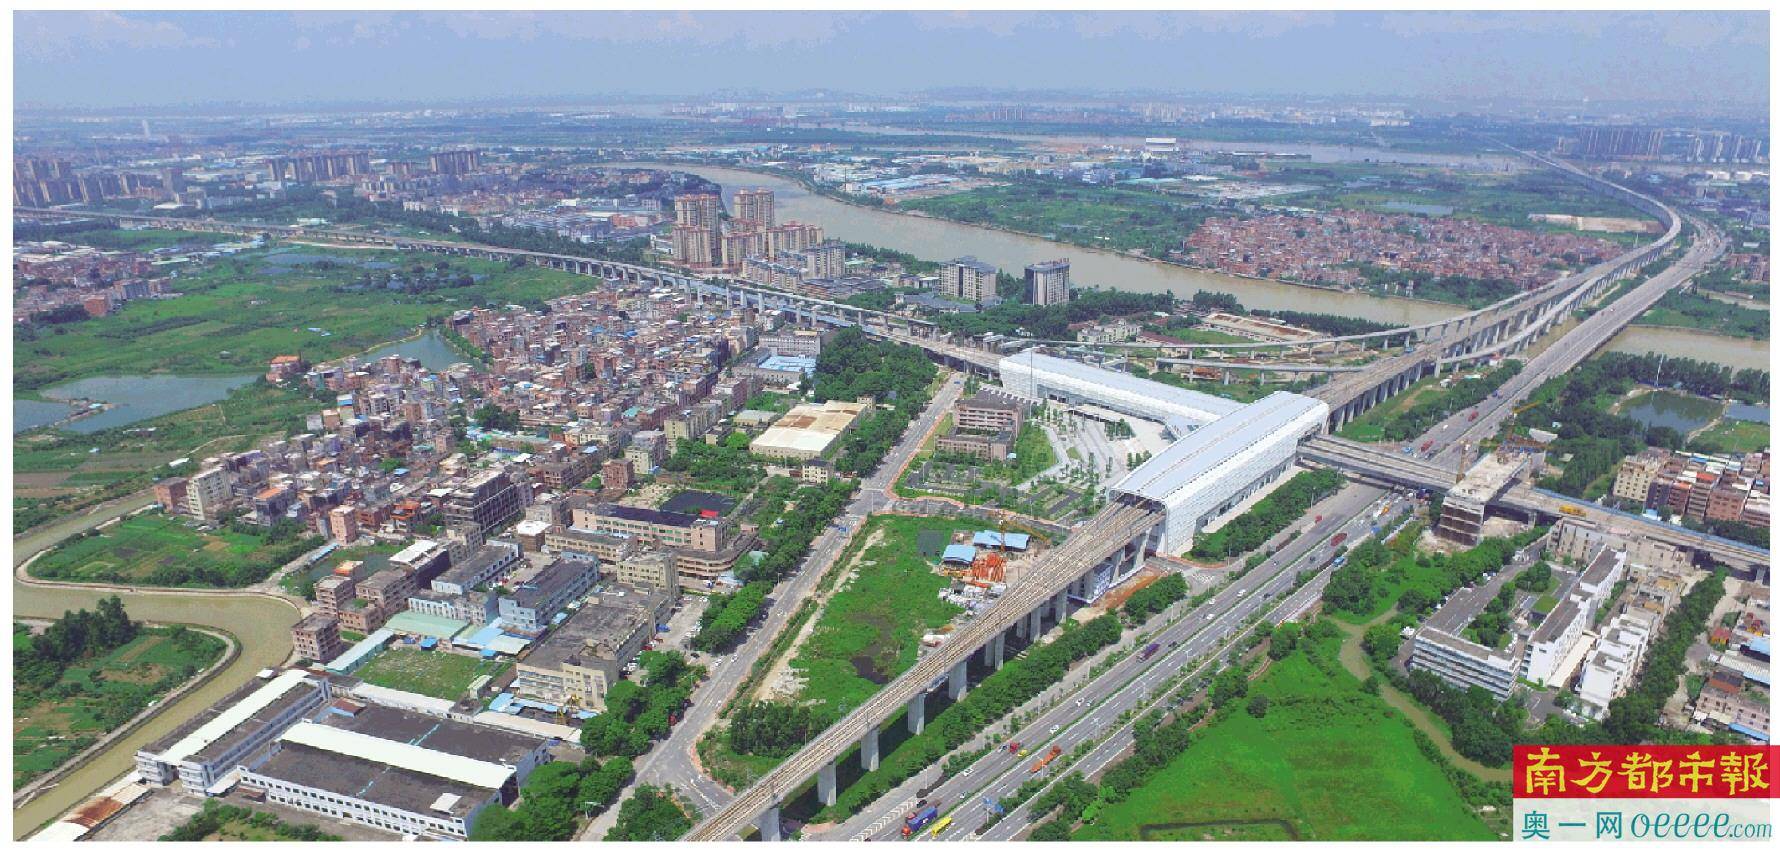 这便是洪梅镇昔日最繁华的工业园区,也是如今东莞最大的工改示范项目